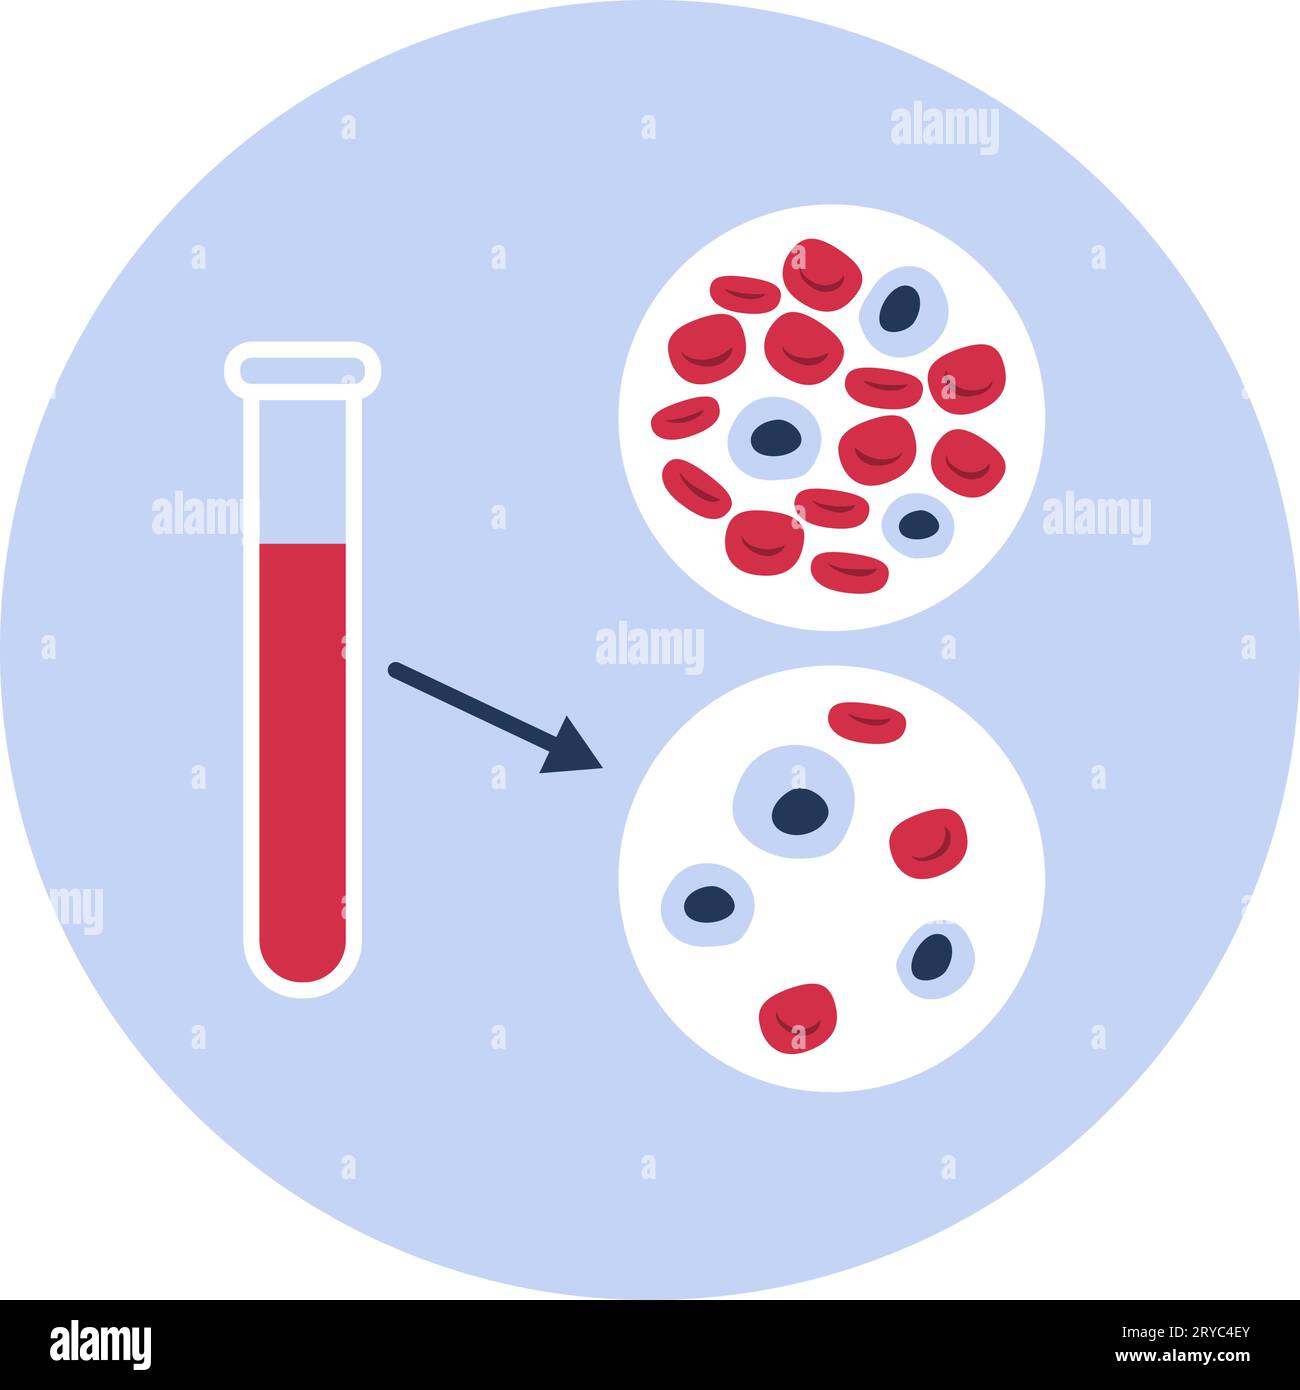 Anämie: Bluttestvergleich zwischen gesundem und anämischem Blut, isoliertes Icon Stock Vektor